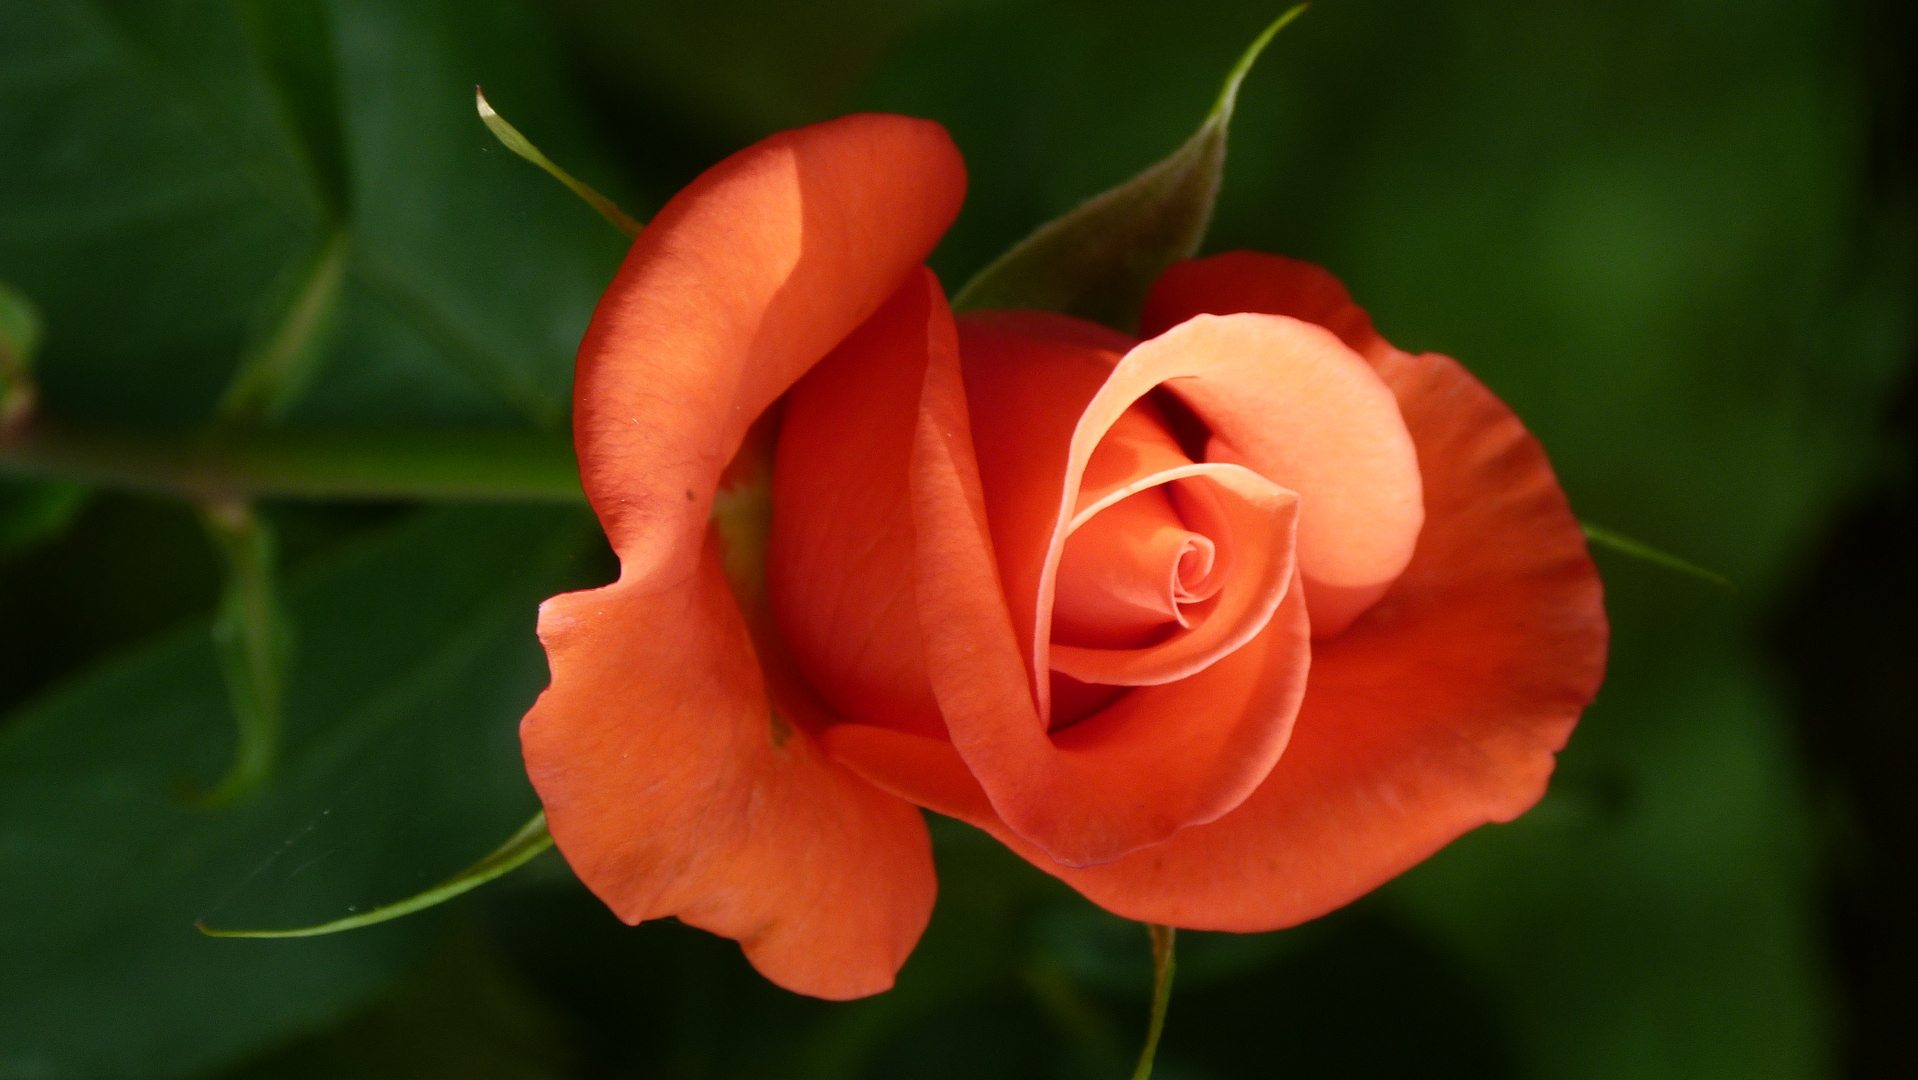 Rose, die schönsten Blumen für mich